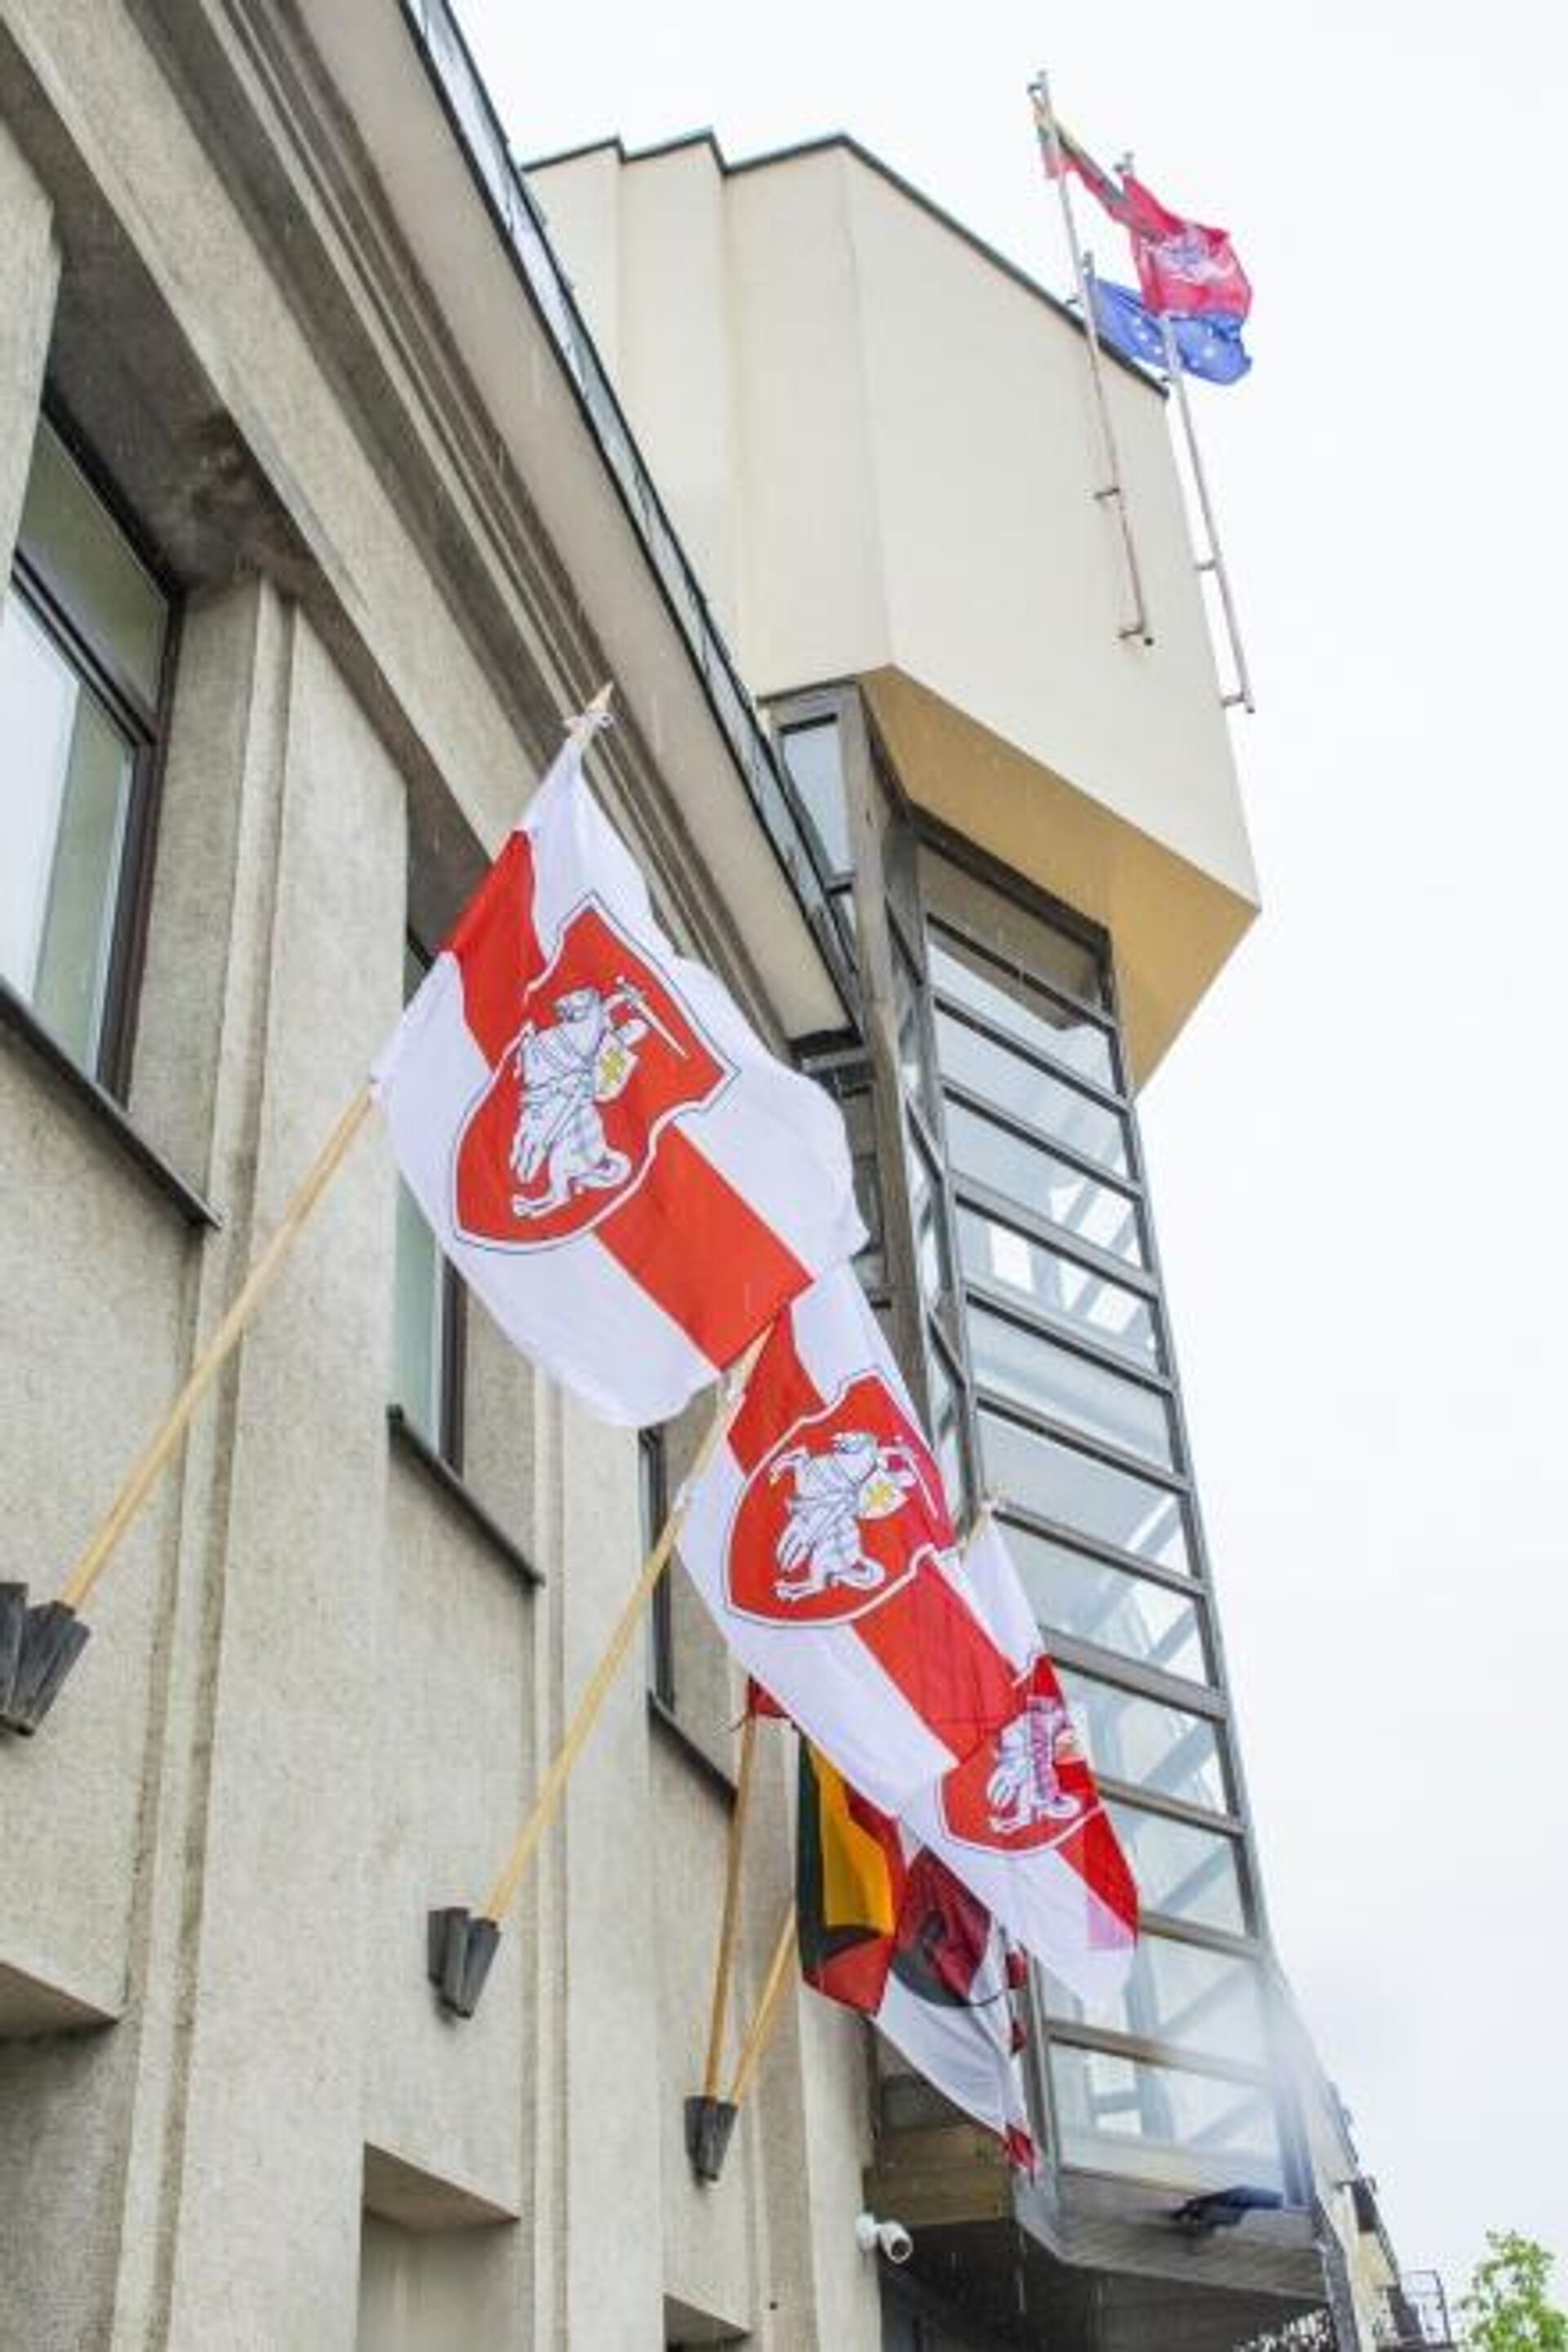 В Паневежисе подняли бело-красно-белый флаг, который использует белорусская оппозиция - Sputnik Литва, 1920, 26.05.2021